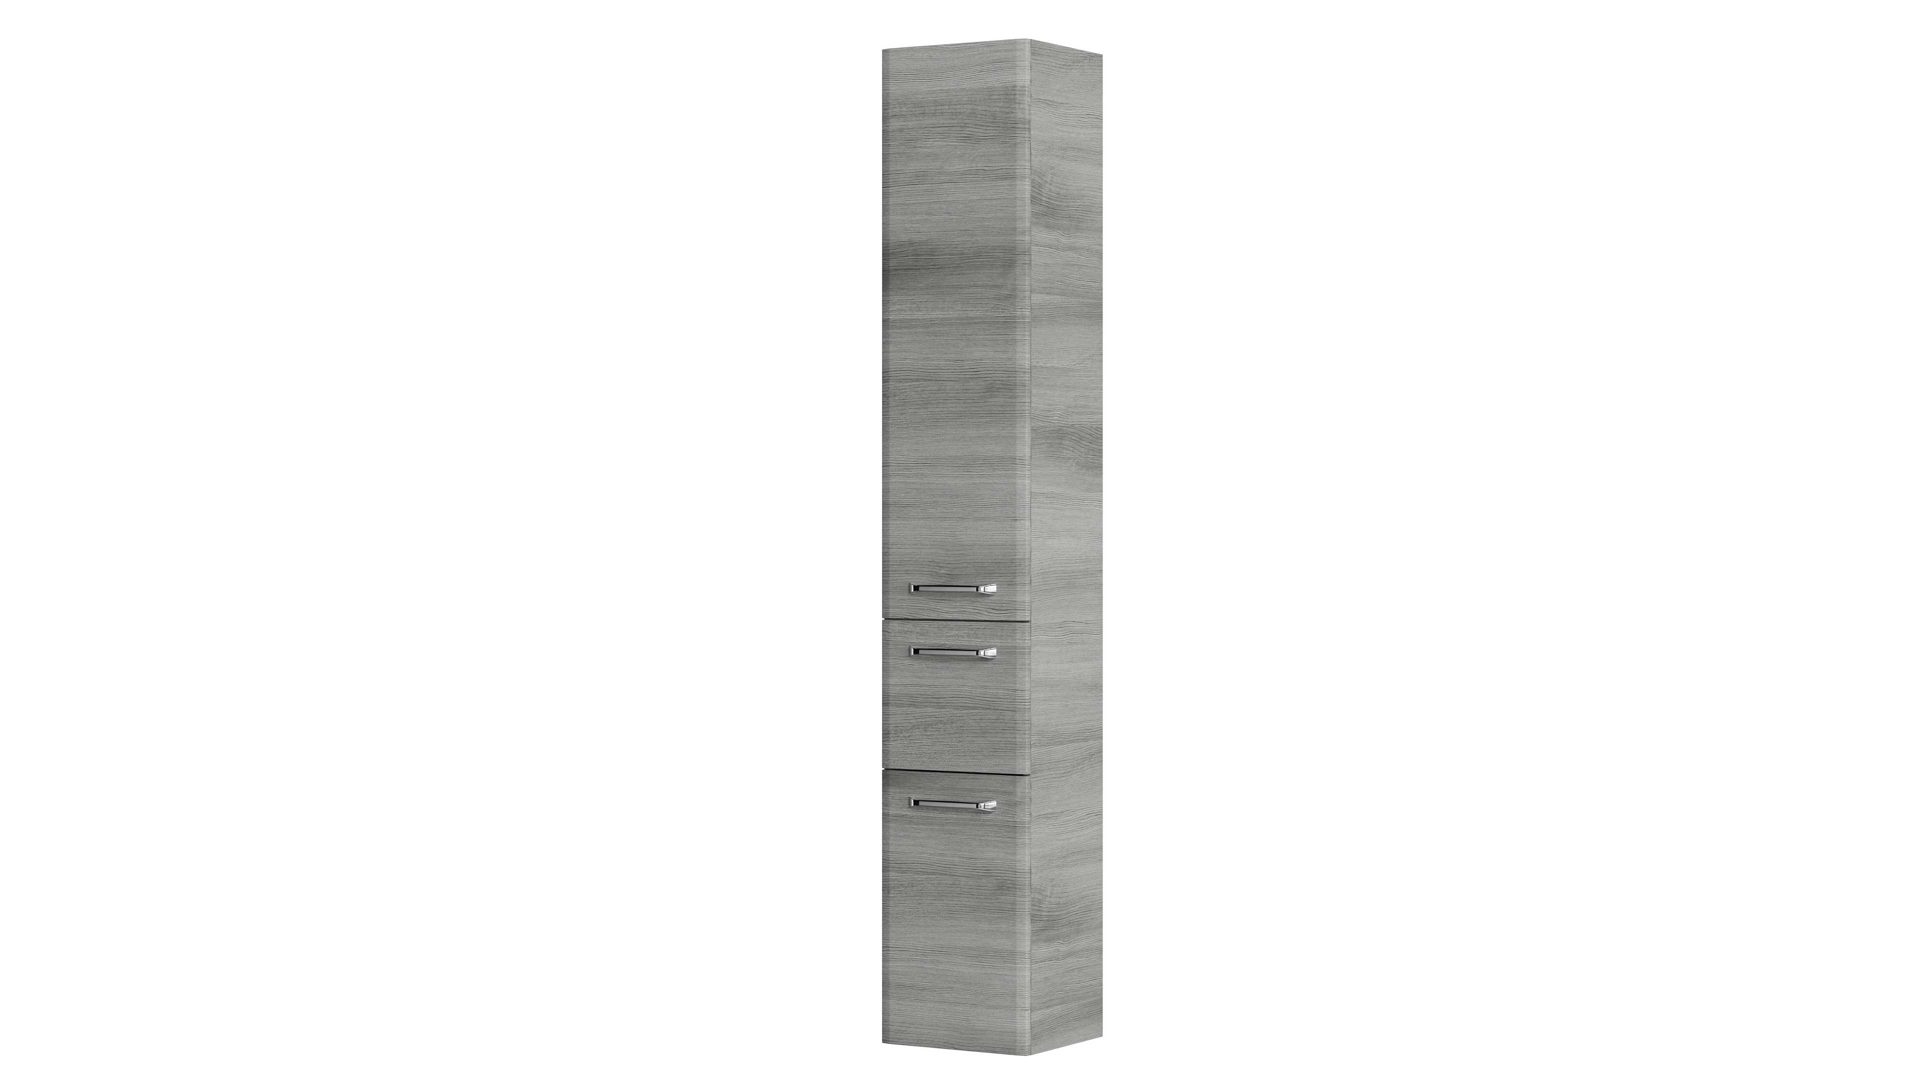 Hoch- / Seitenschrank Pelipal aus Holz in Grau pelipal Quickset 328 - Badschrank bzw. Hochschrank Graphit - zwei Türen, eine Schublade, Höhe ca. 186 cm